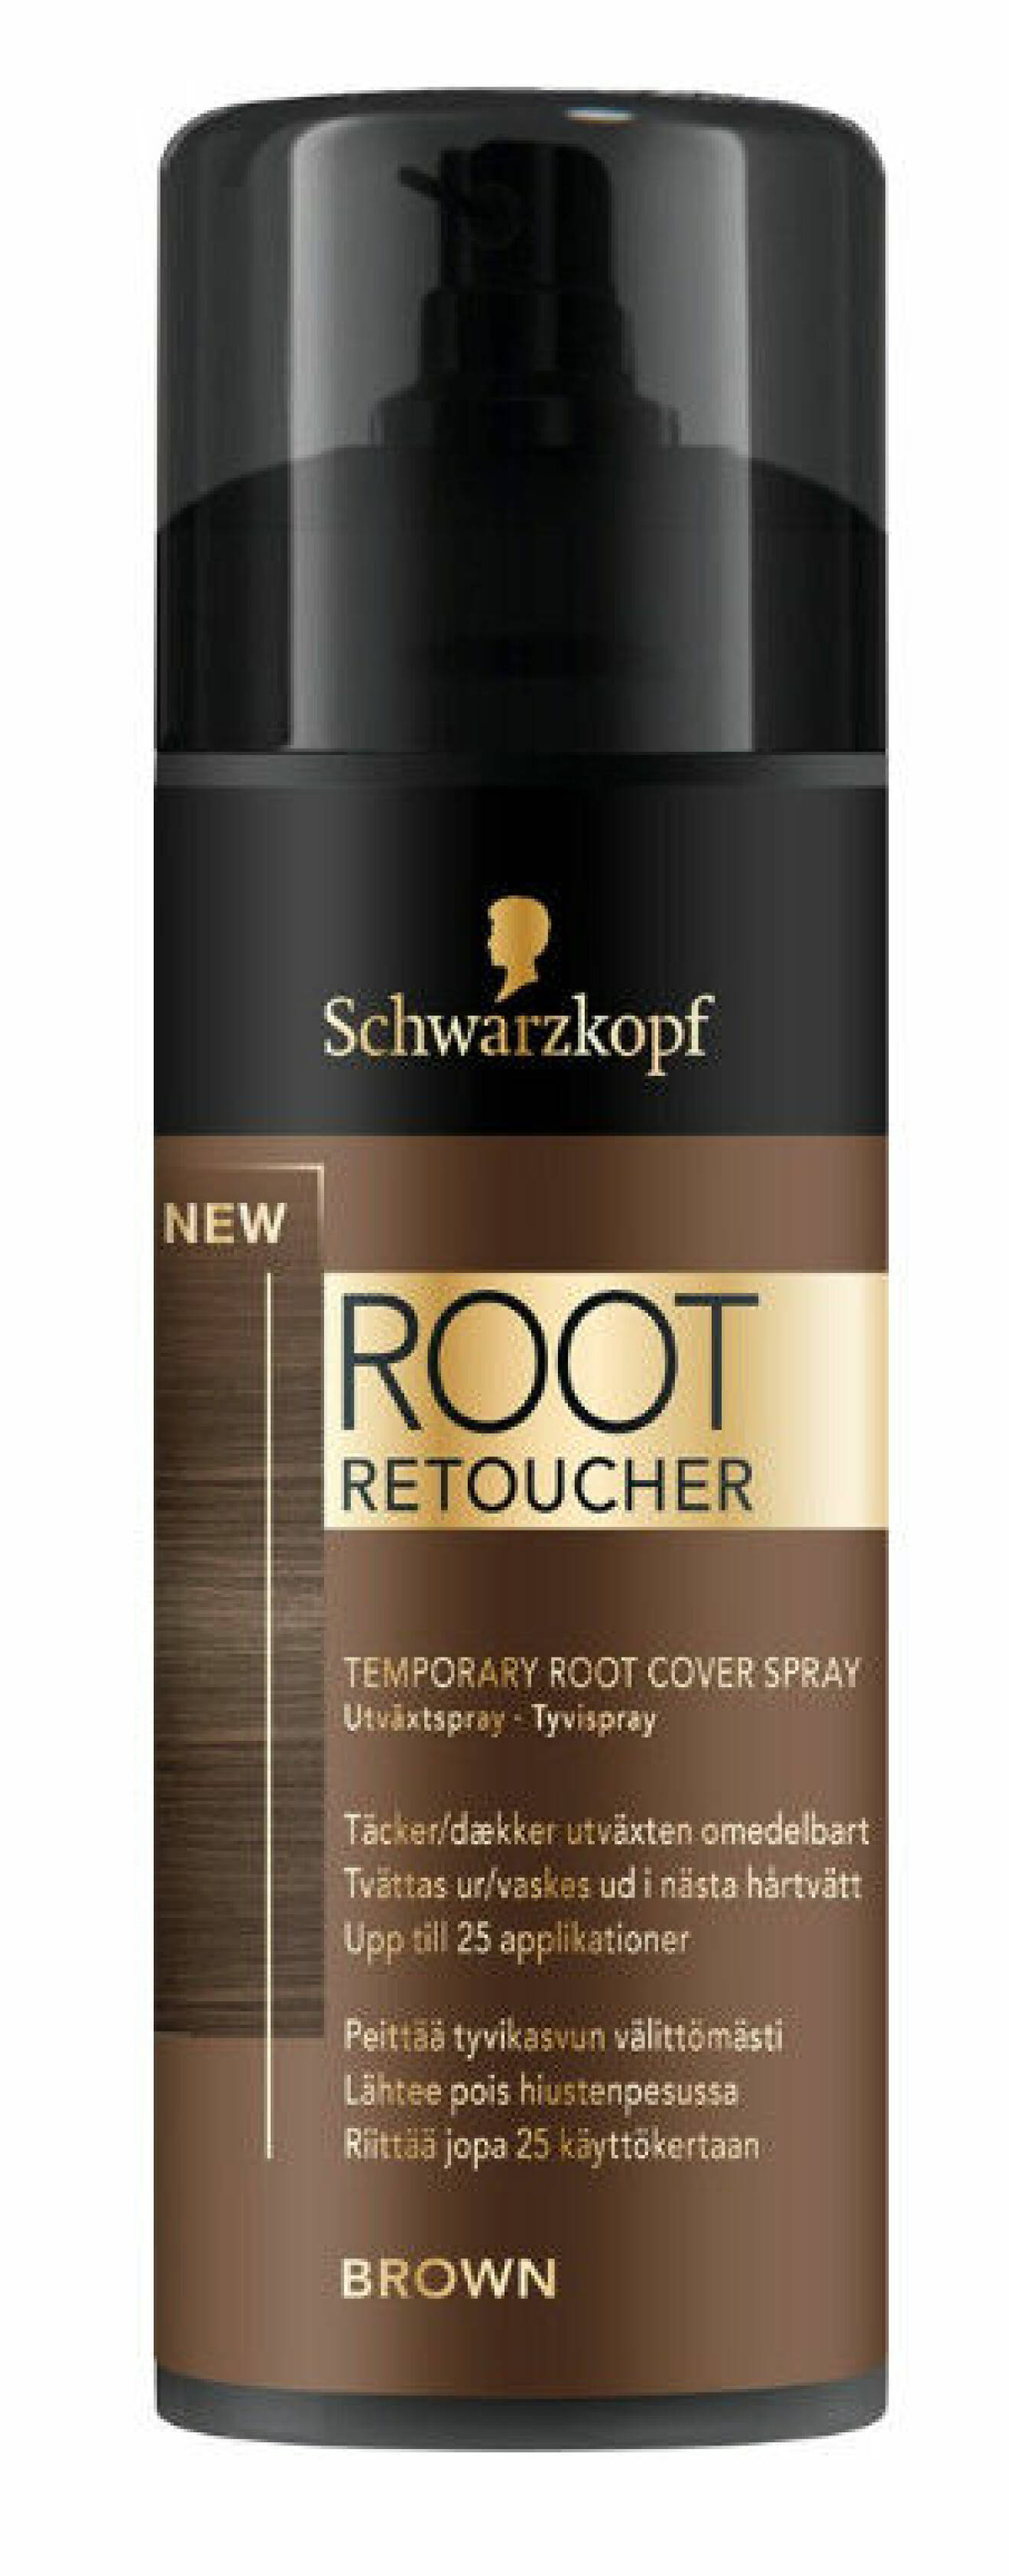 Root Retoucher från Schwartzkopf.